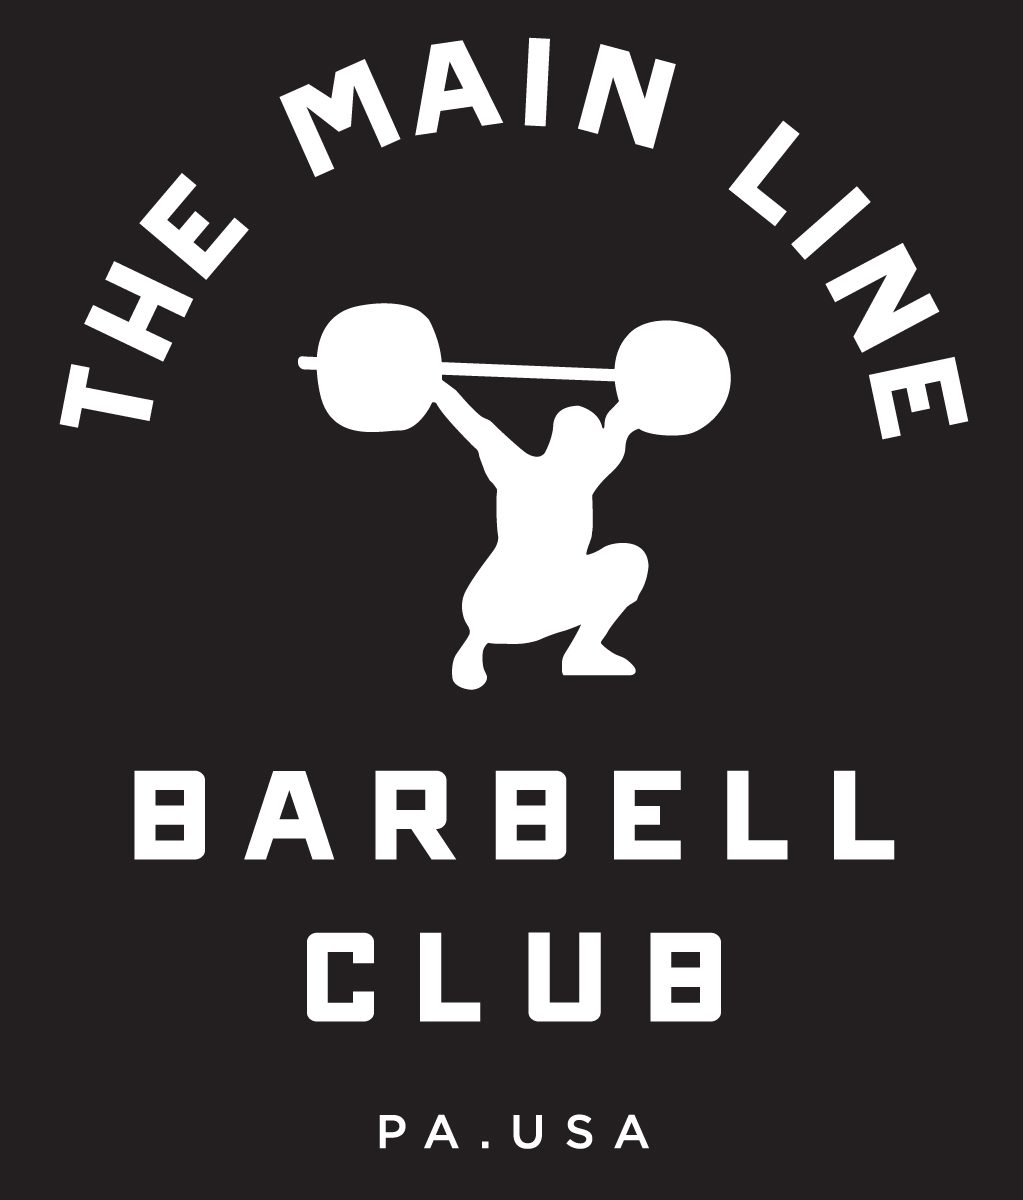 Week of 9.26.16 Barbell Club